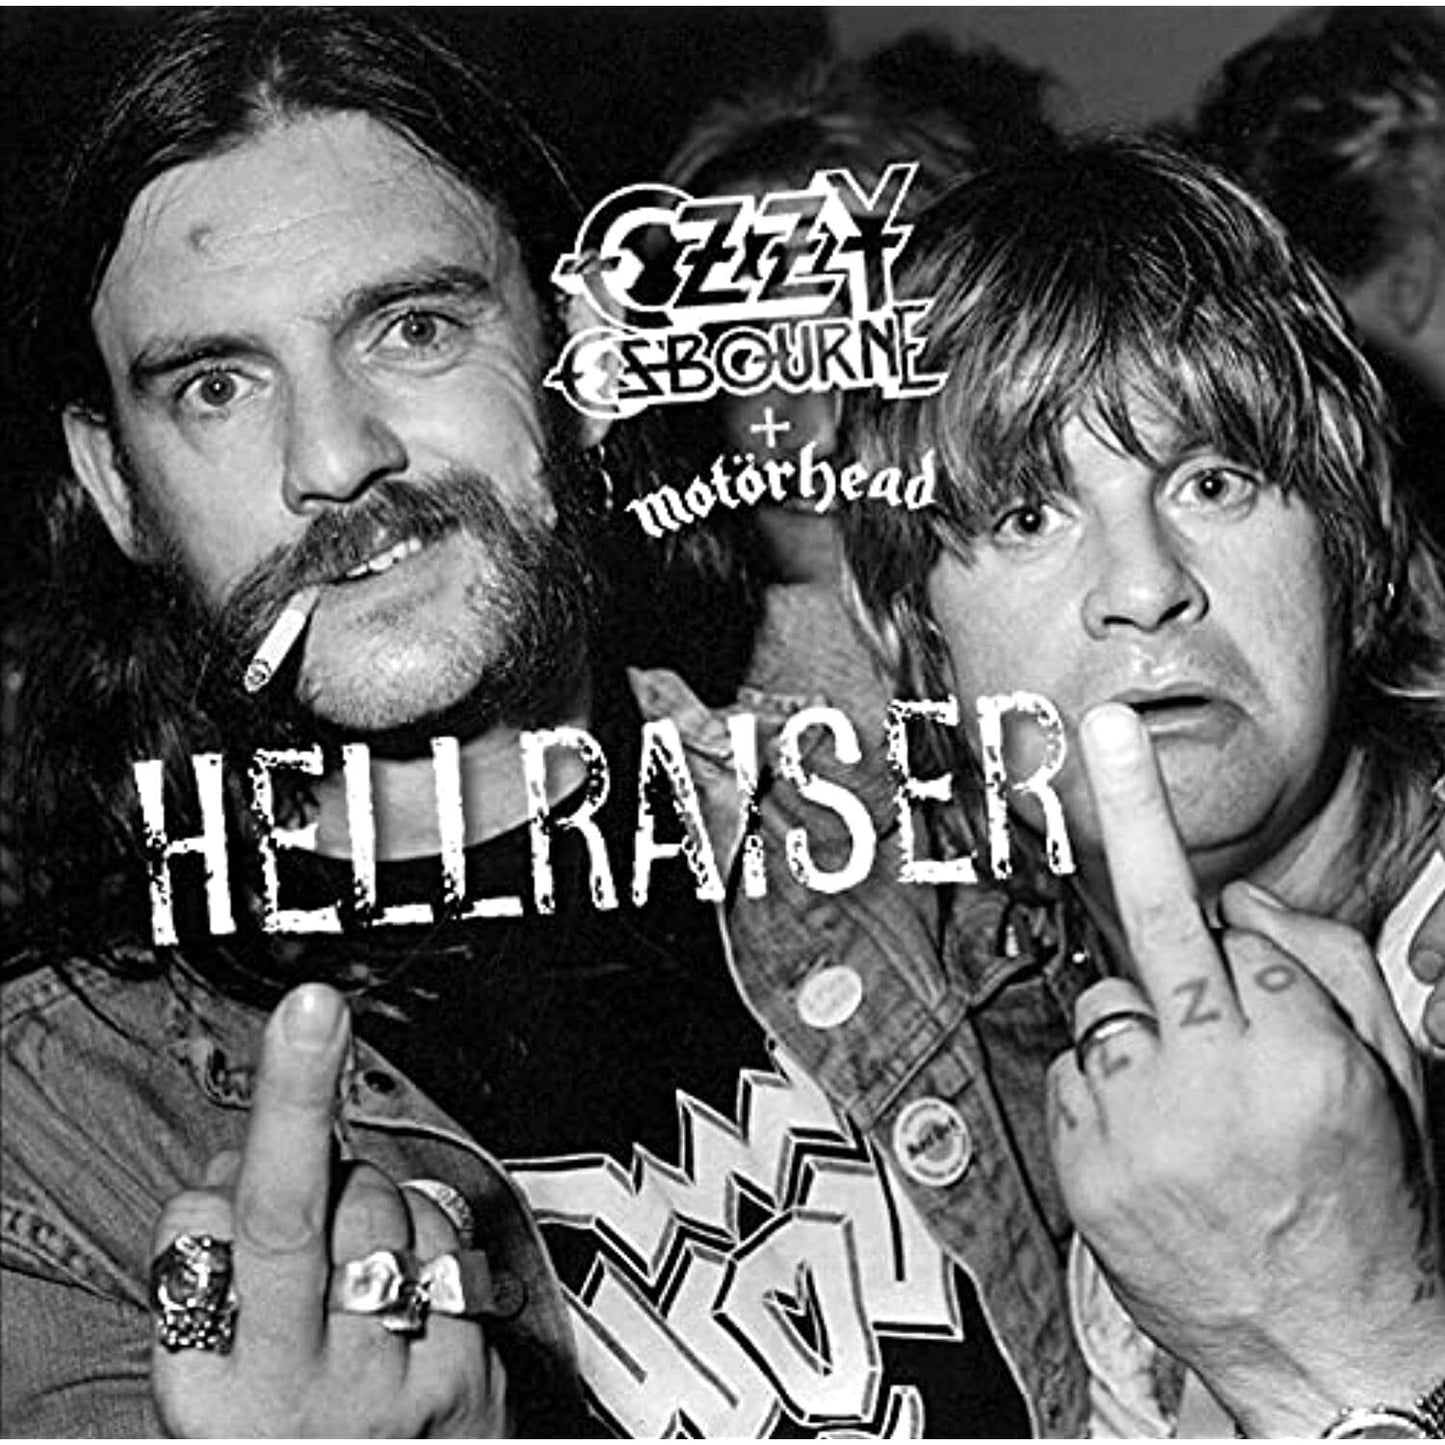 Motorhead & Ozzy Osbourne - Hellraiser 10" Vinyl Single 2021 Hellraiser Mashup